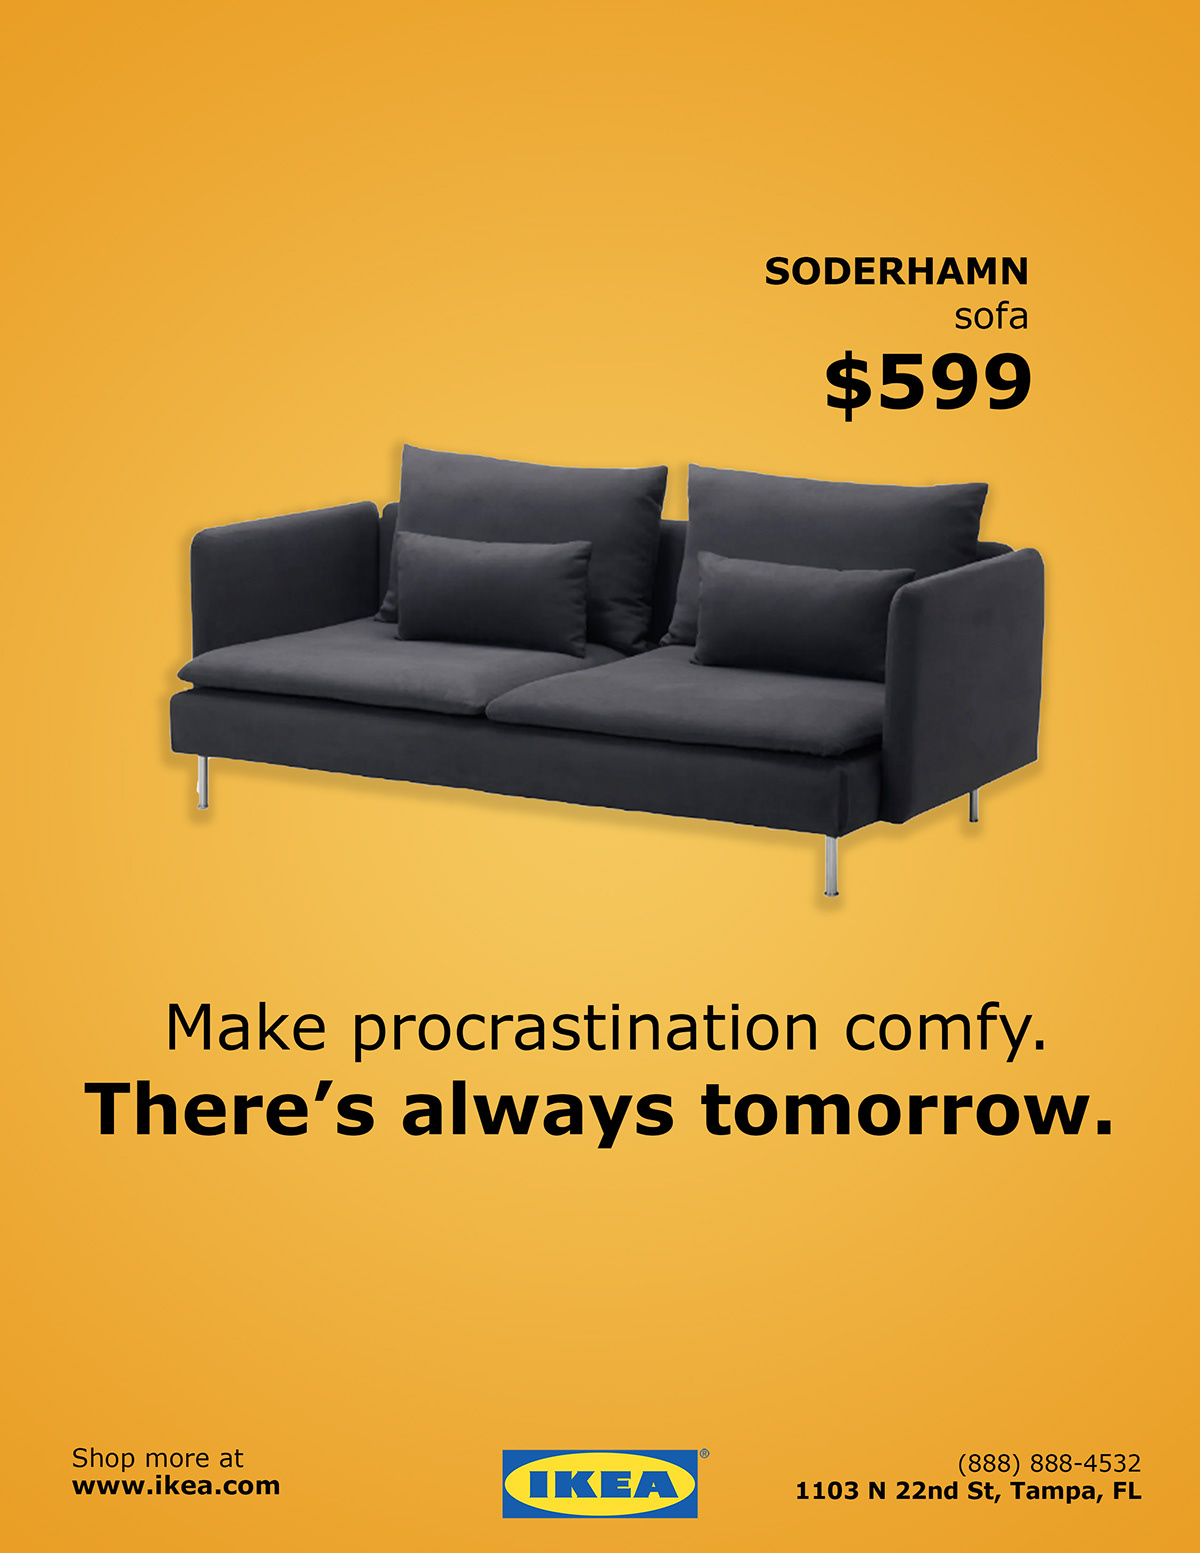 Ikea Ads on Behance